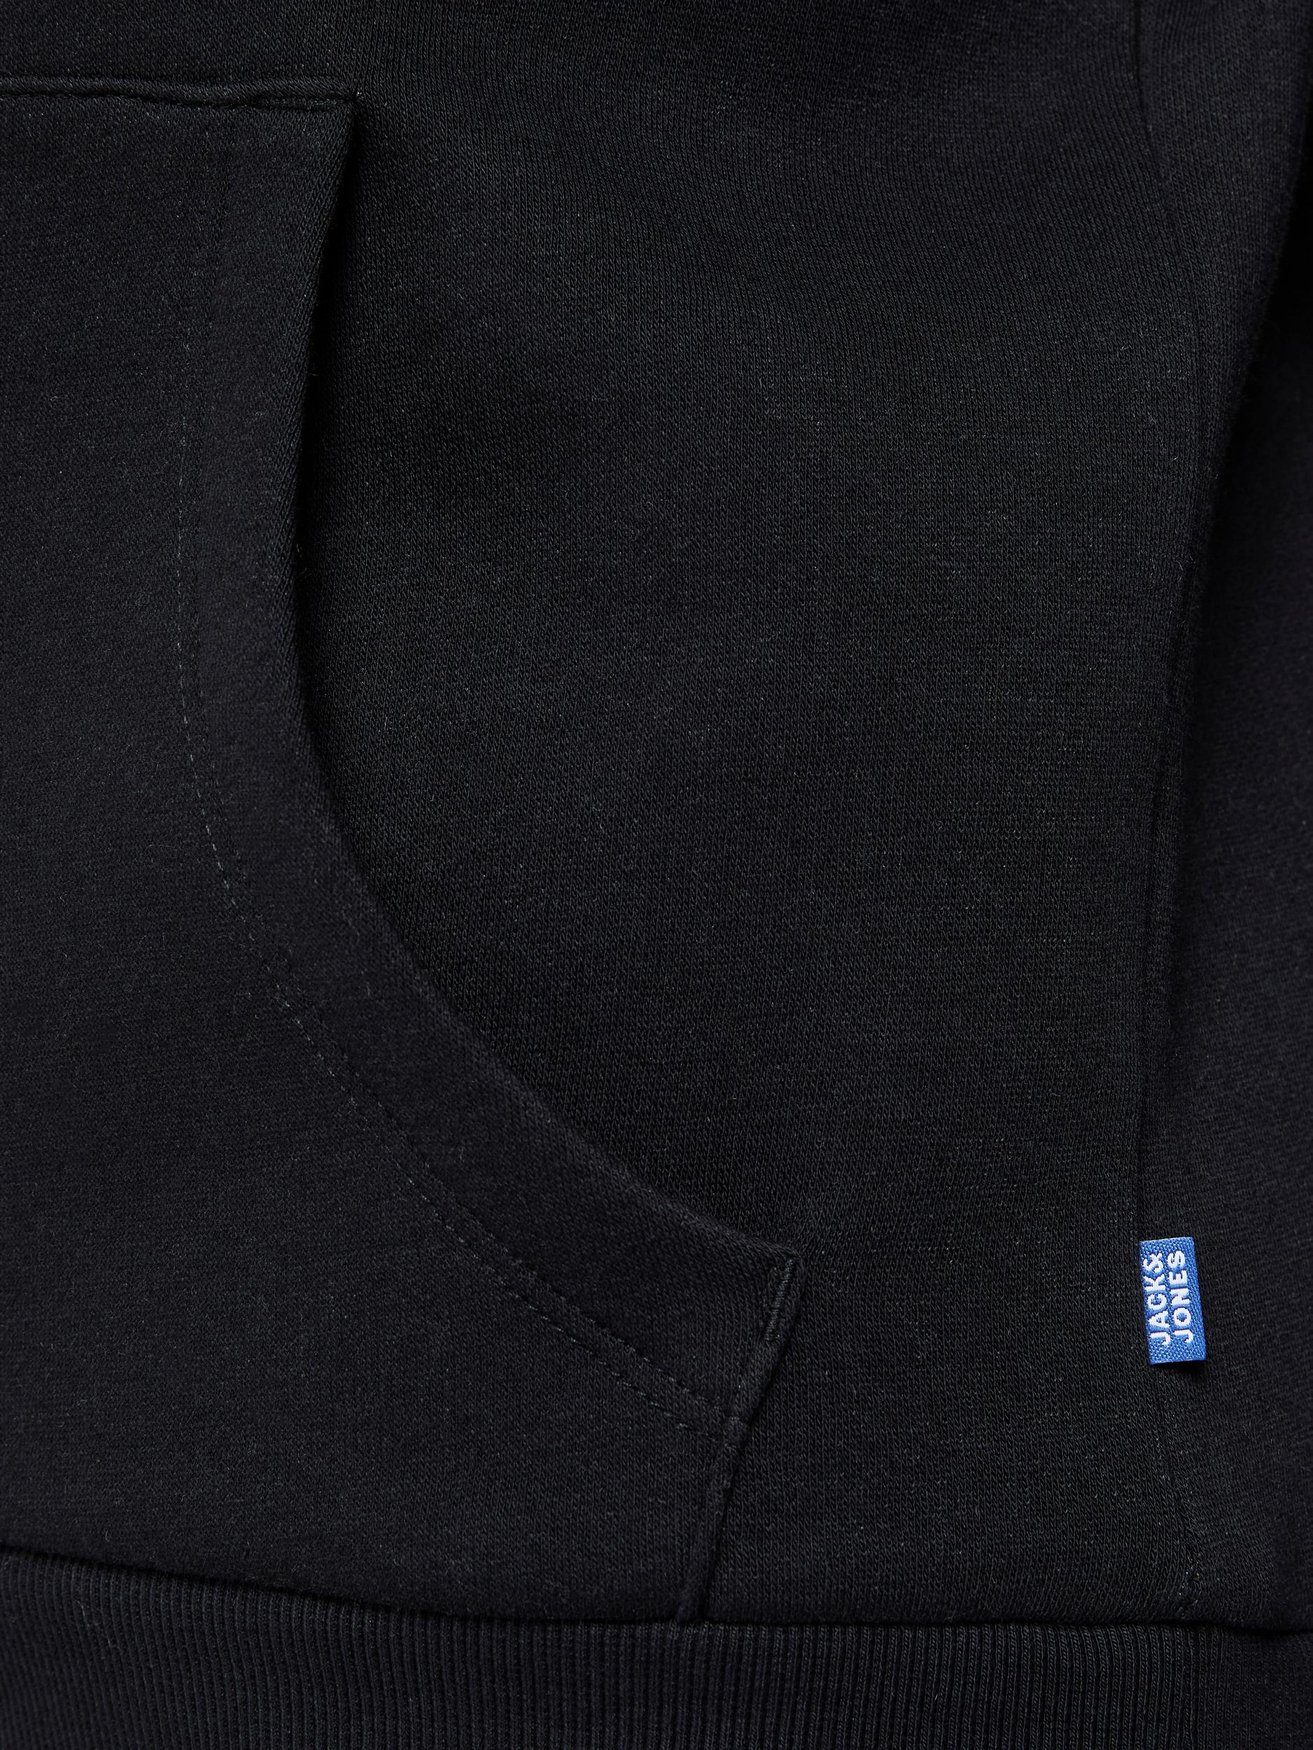 Jack & Hoodie 6502 Pullover in Hoodie Jones Schwarz JJECORP Sweater Kapuzen Logo